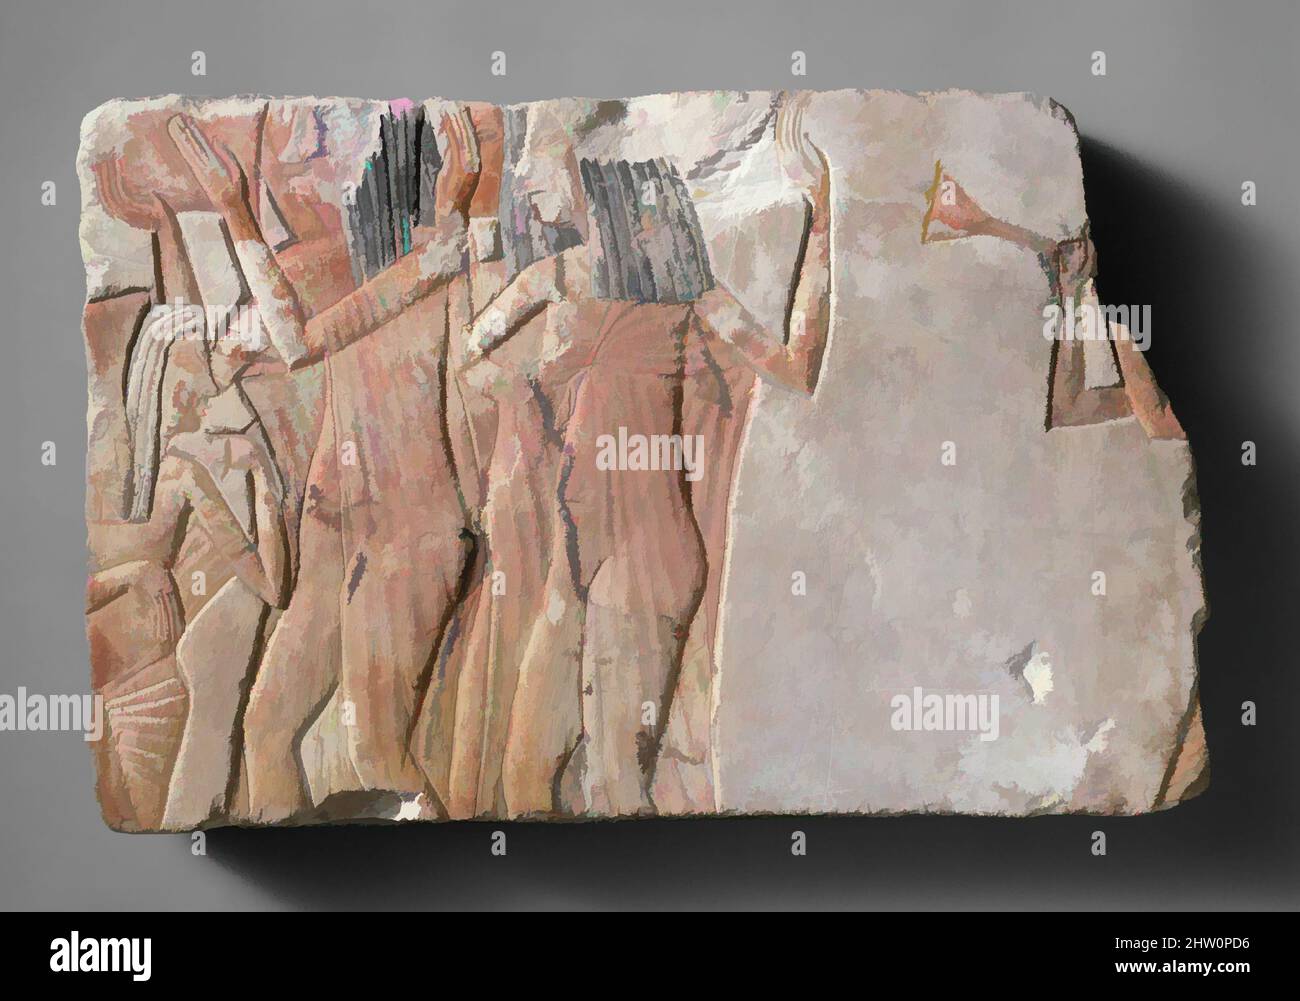 Arte ispirata da ballerini con strumenti, New Kingdom, Amarna period, Dynasty 18, ca. 1353–1336 a.C., dall'Egitto; probabilmente dal Medio Egitto, Hermopolis (Ashmunein; Khemenu); probabilmente originario di Amarna (Akhetaten), calcare, vernice, H. 24 cm (9 7/16 in); W. 37,2 cm (14 5/8 pollici), opere classiche modernizzate da Artotop con un tuffo di modernità. Forme, colore e valore, impatto visivo accattivante sulle emozioni artistiche attraverso la libertà delle opere d'arte in modo contemporaneo. Un messaggio senza tempo che persegue una nuova direzione selvaggiamente creativa. Artisti che si rivolgono al supporto digitale e creano l'NFT Artotop Foto Stock